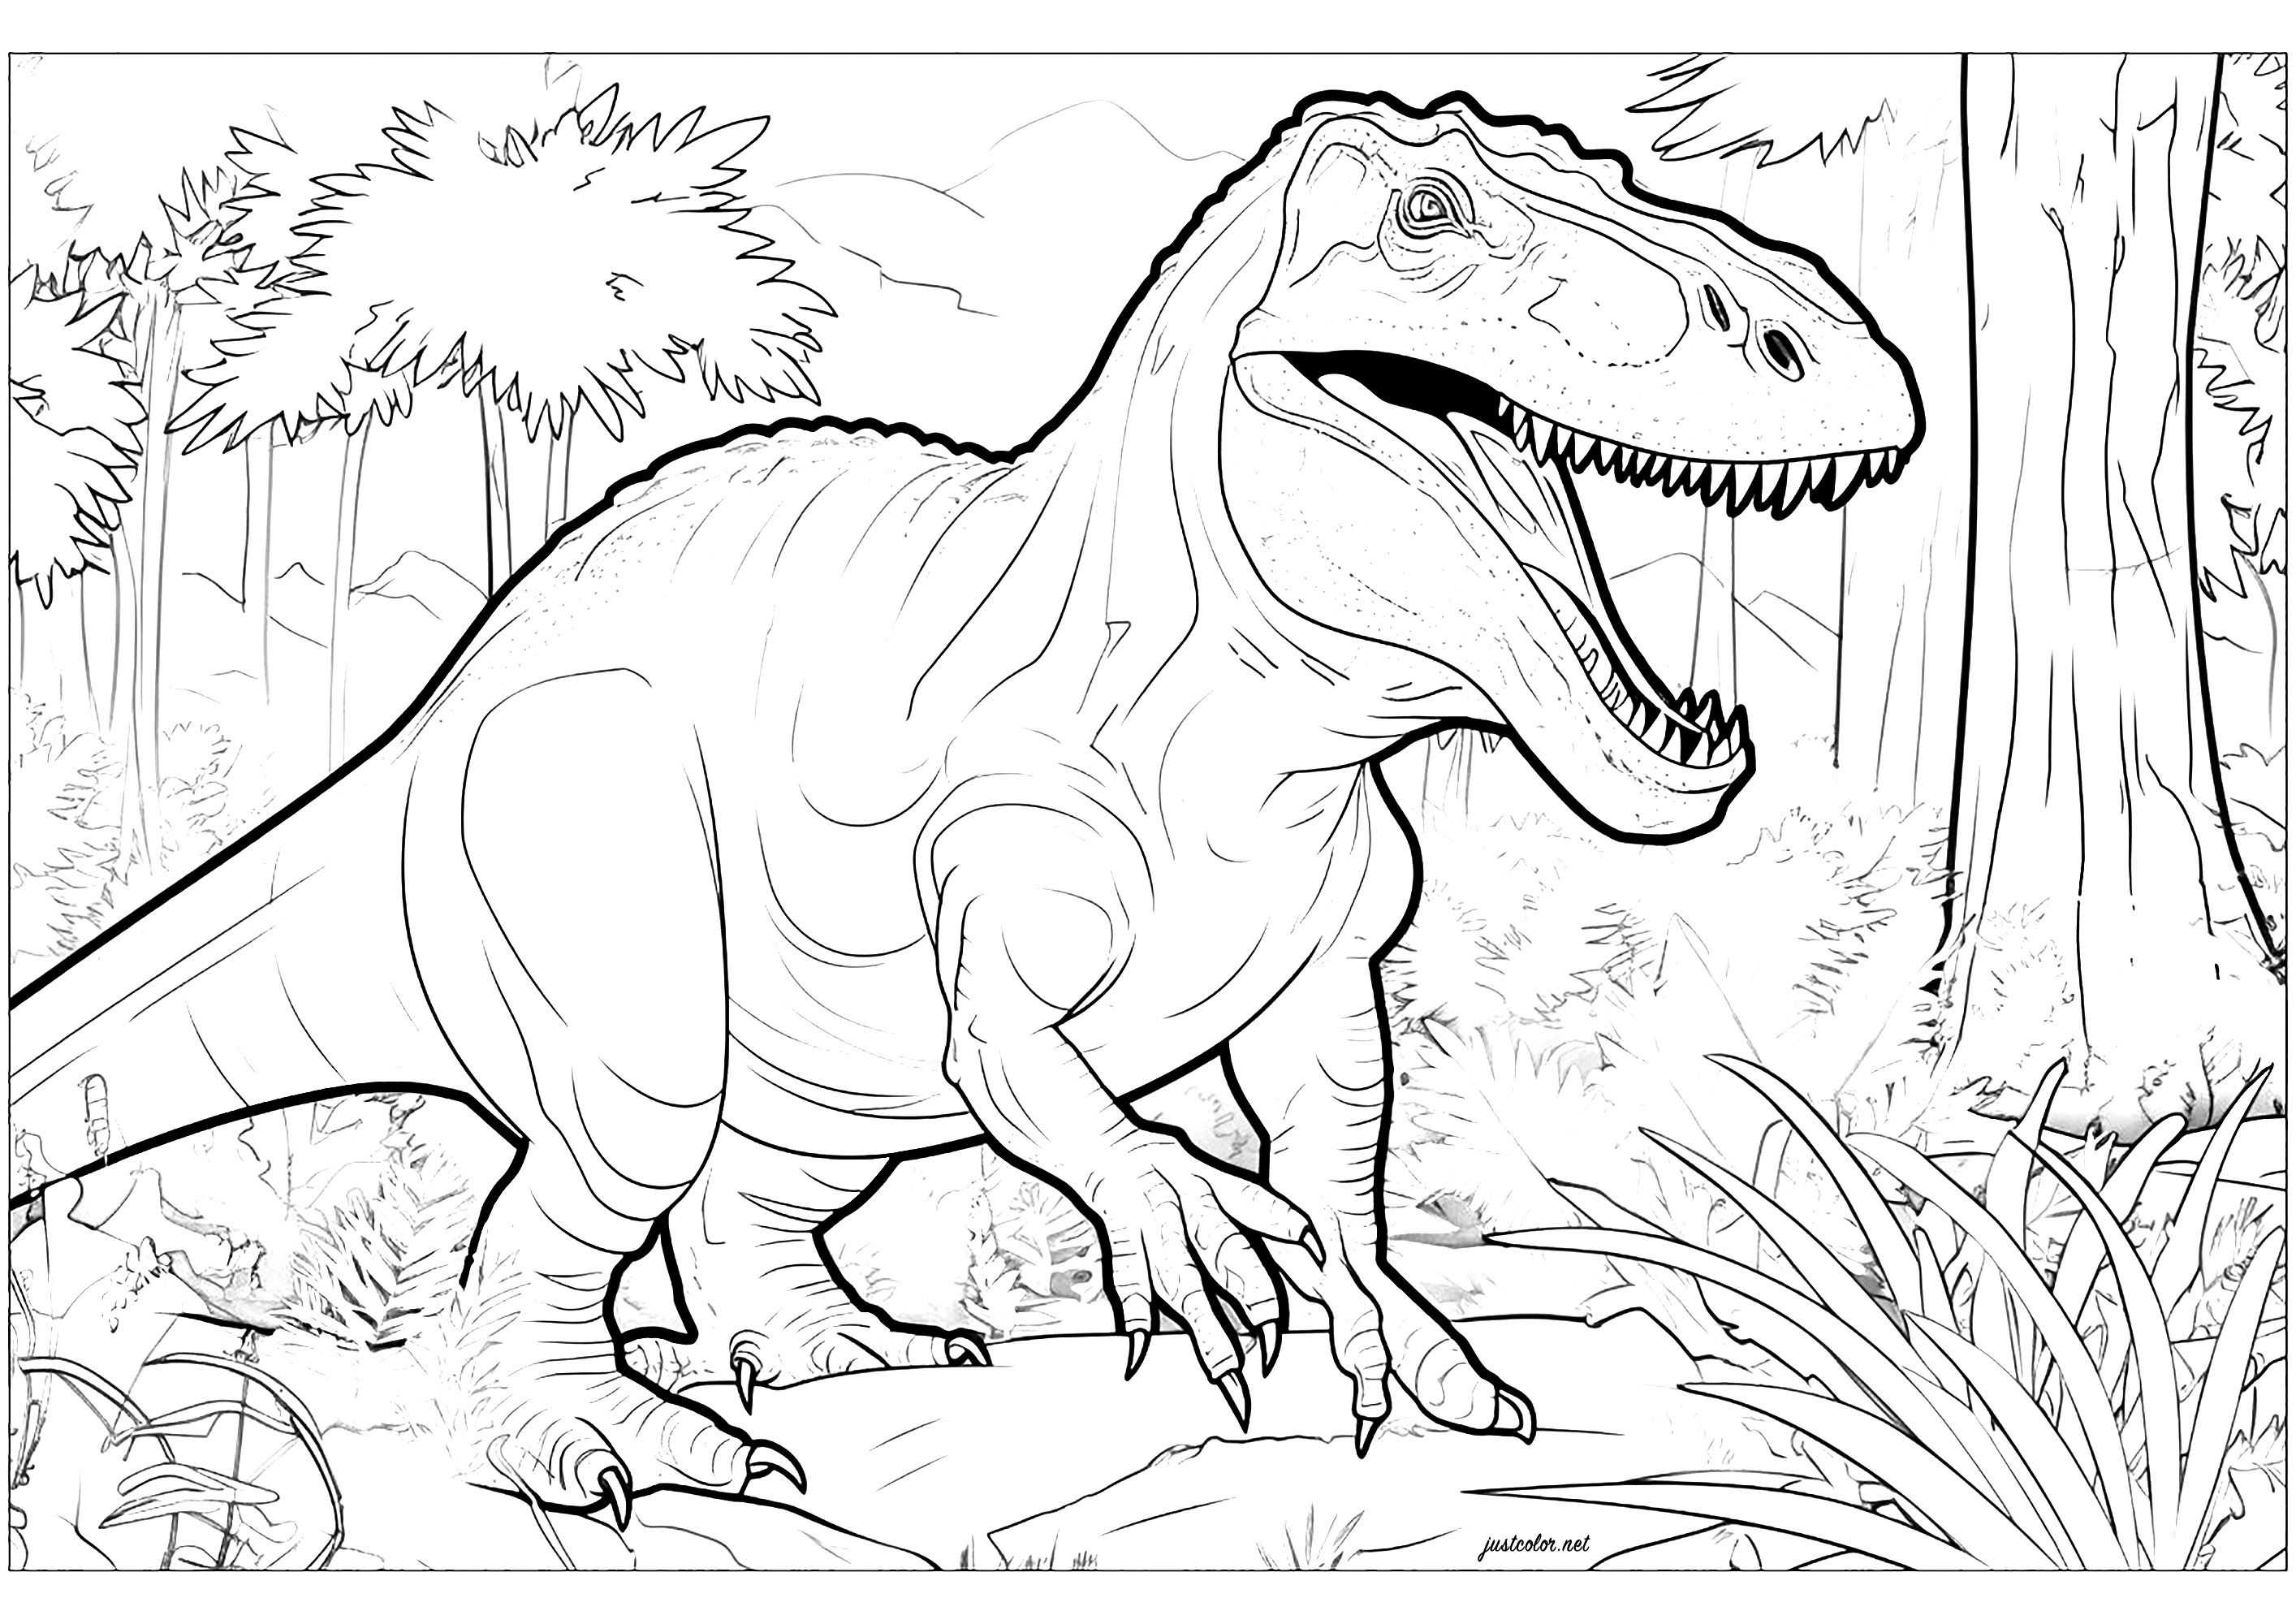 Tyrannosaurus in seiner natürlichen Umgebung. Realistische und detailreiche Farbgebung